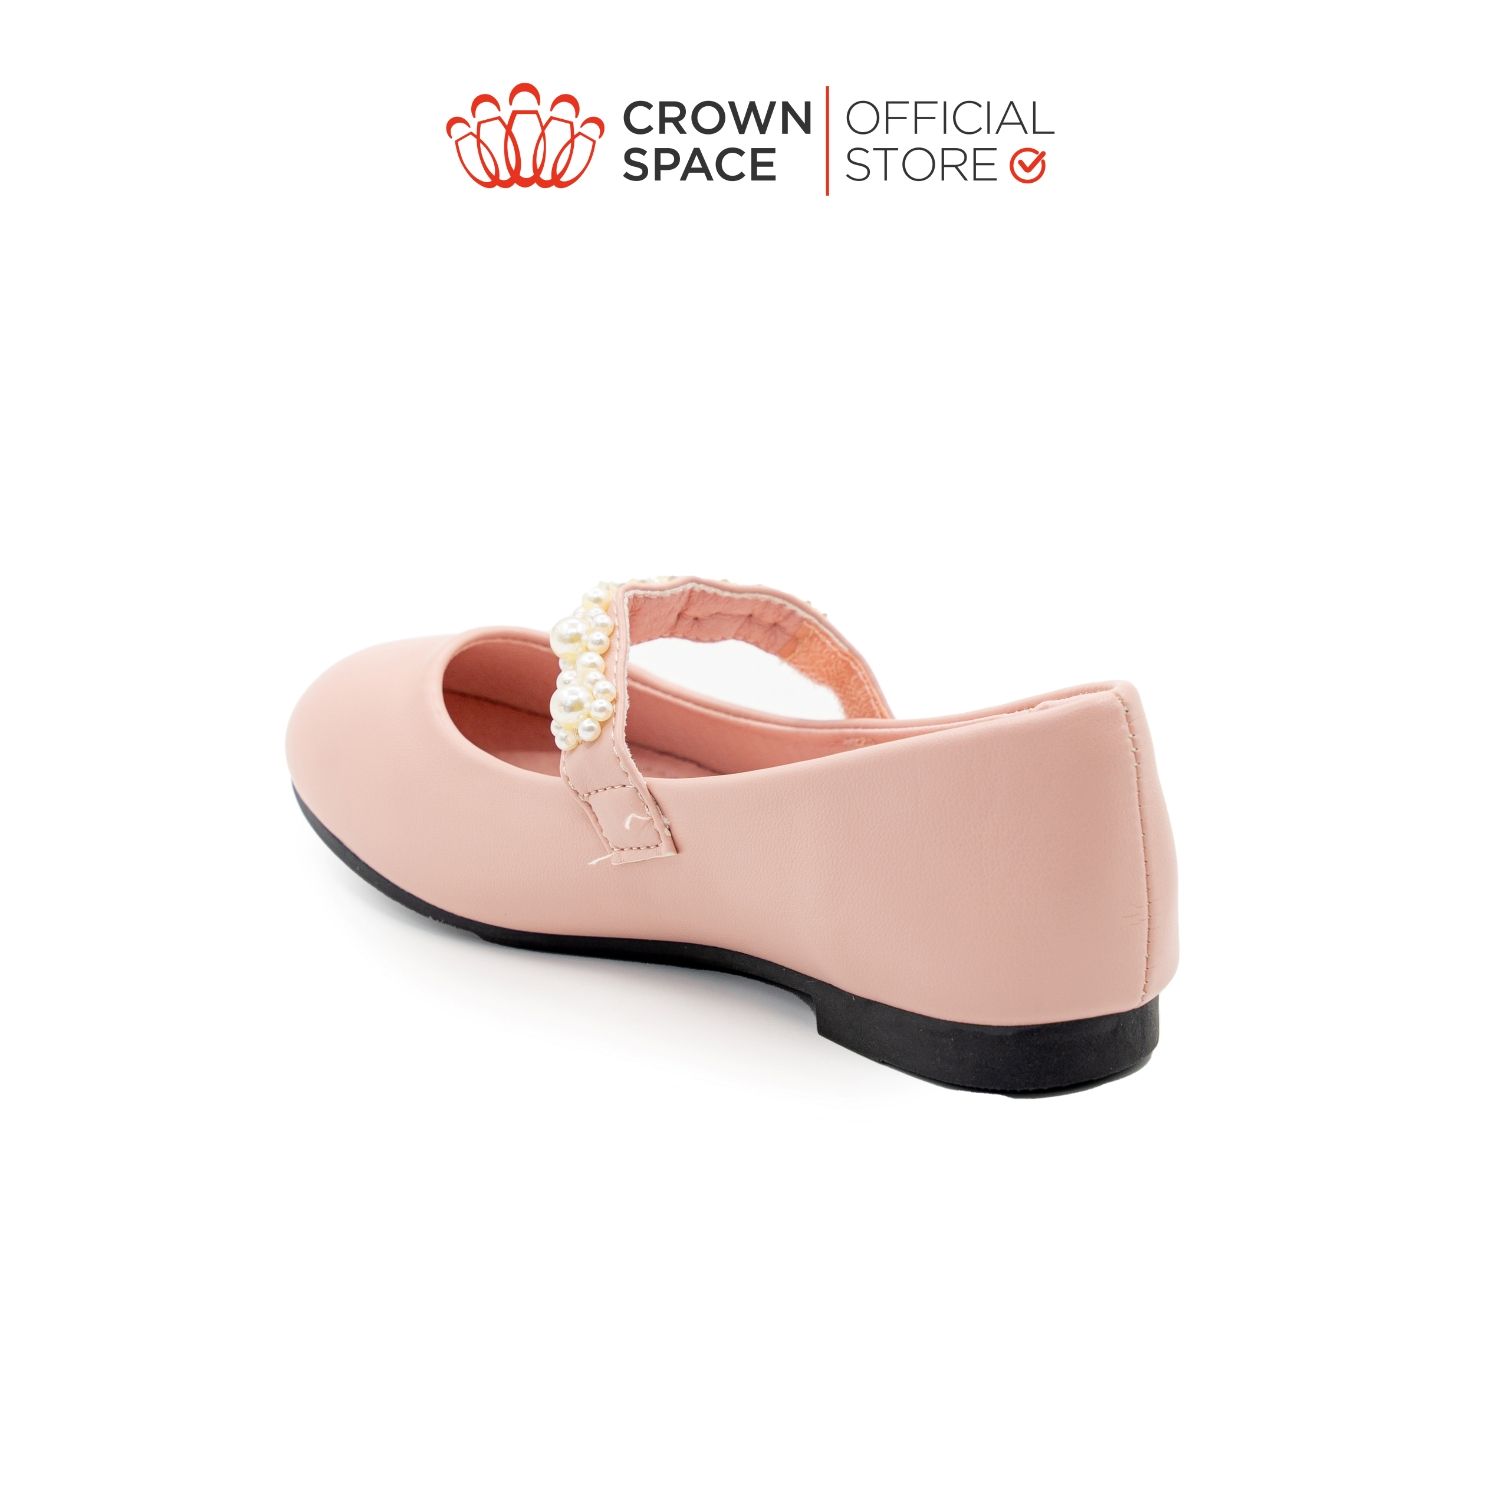  Giày Búp Bê Trẻ Em Cao Cấp Chính Hãng Crown Space Dành Cho Bé Gái Đi Chơi Đi Học CRUK3148 Size 30 - 36 